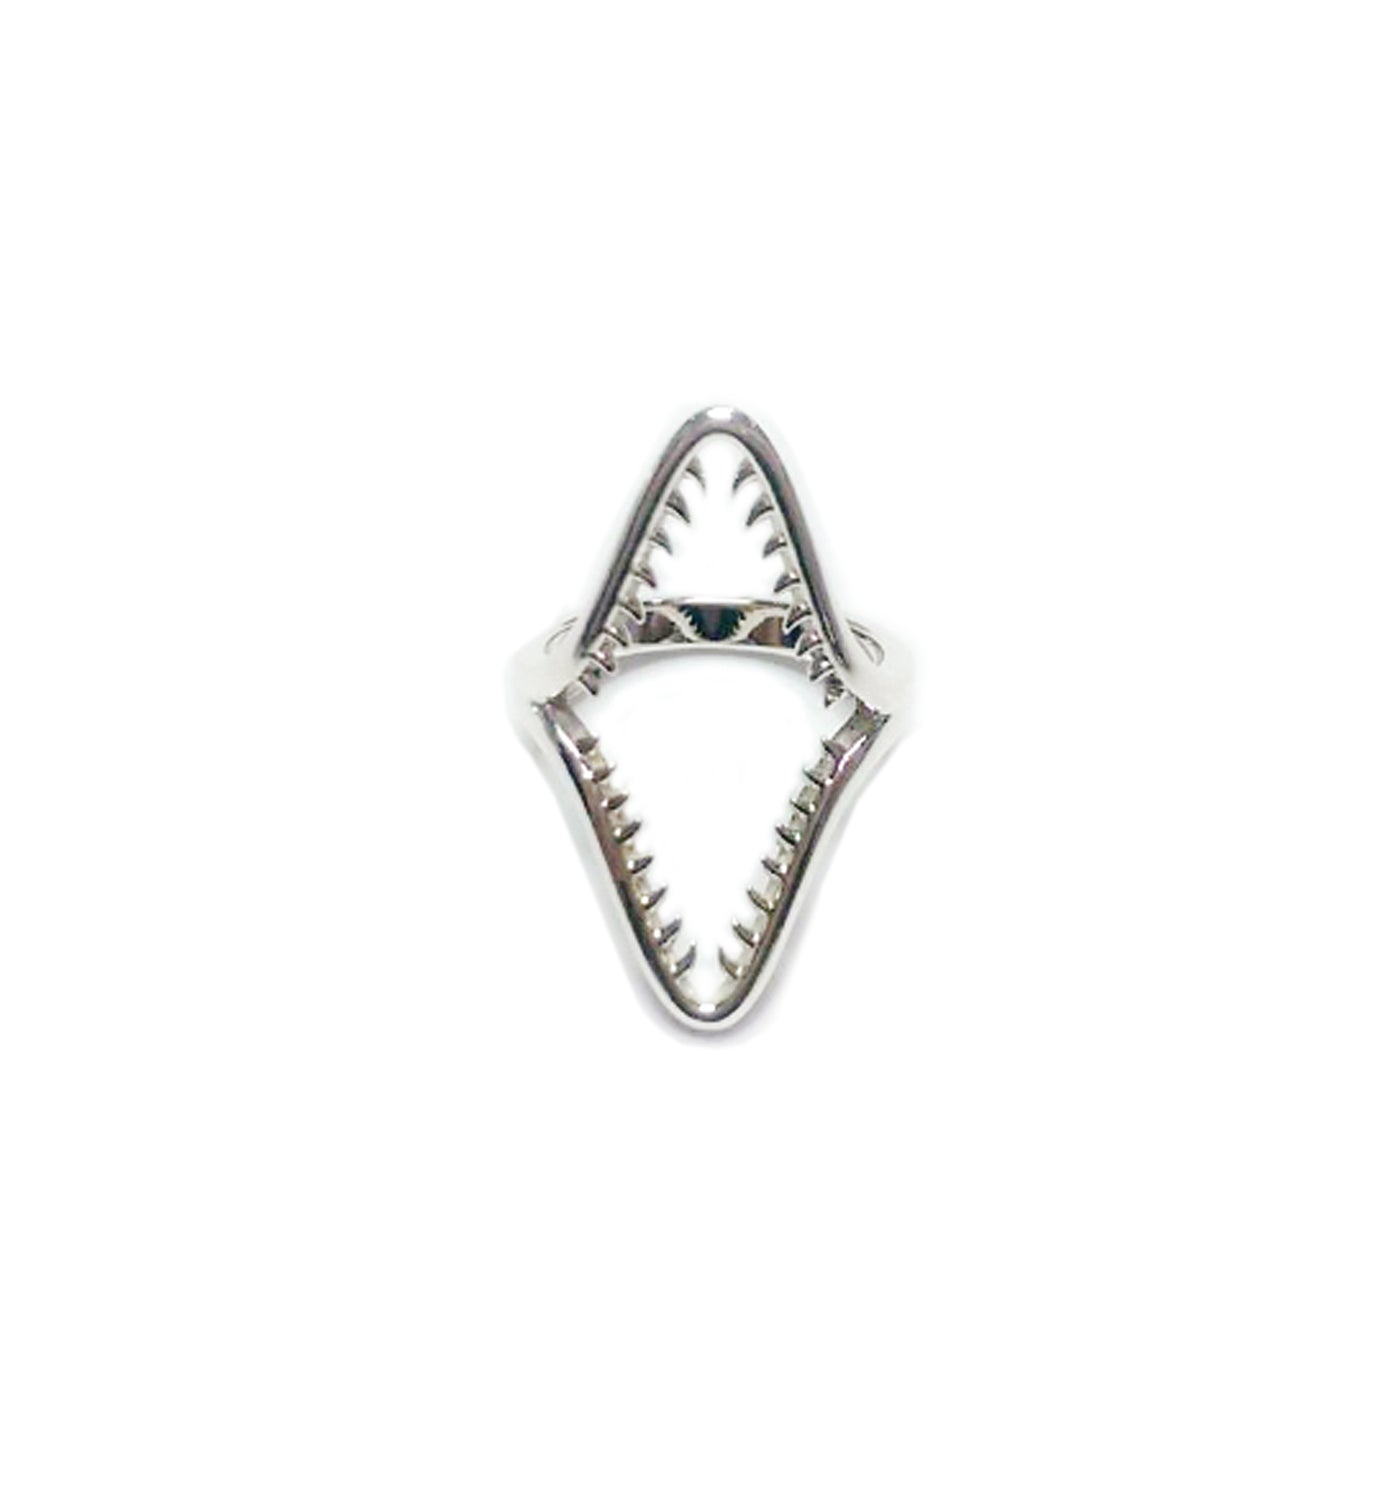 Raja Ampat Jaw Ring | Sterling Silver - White Rhodium